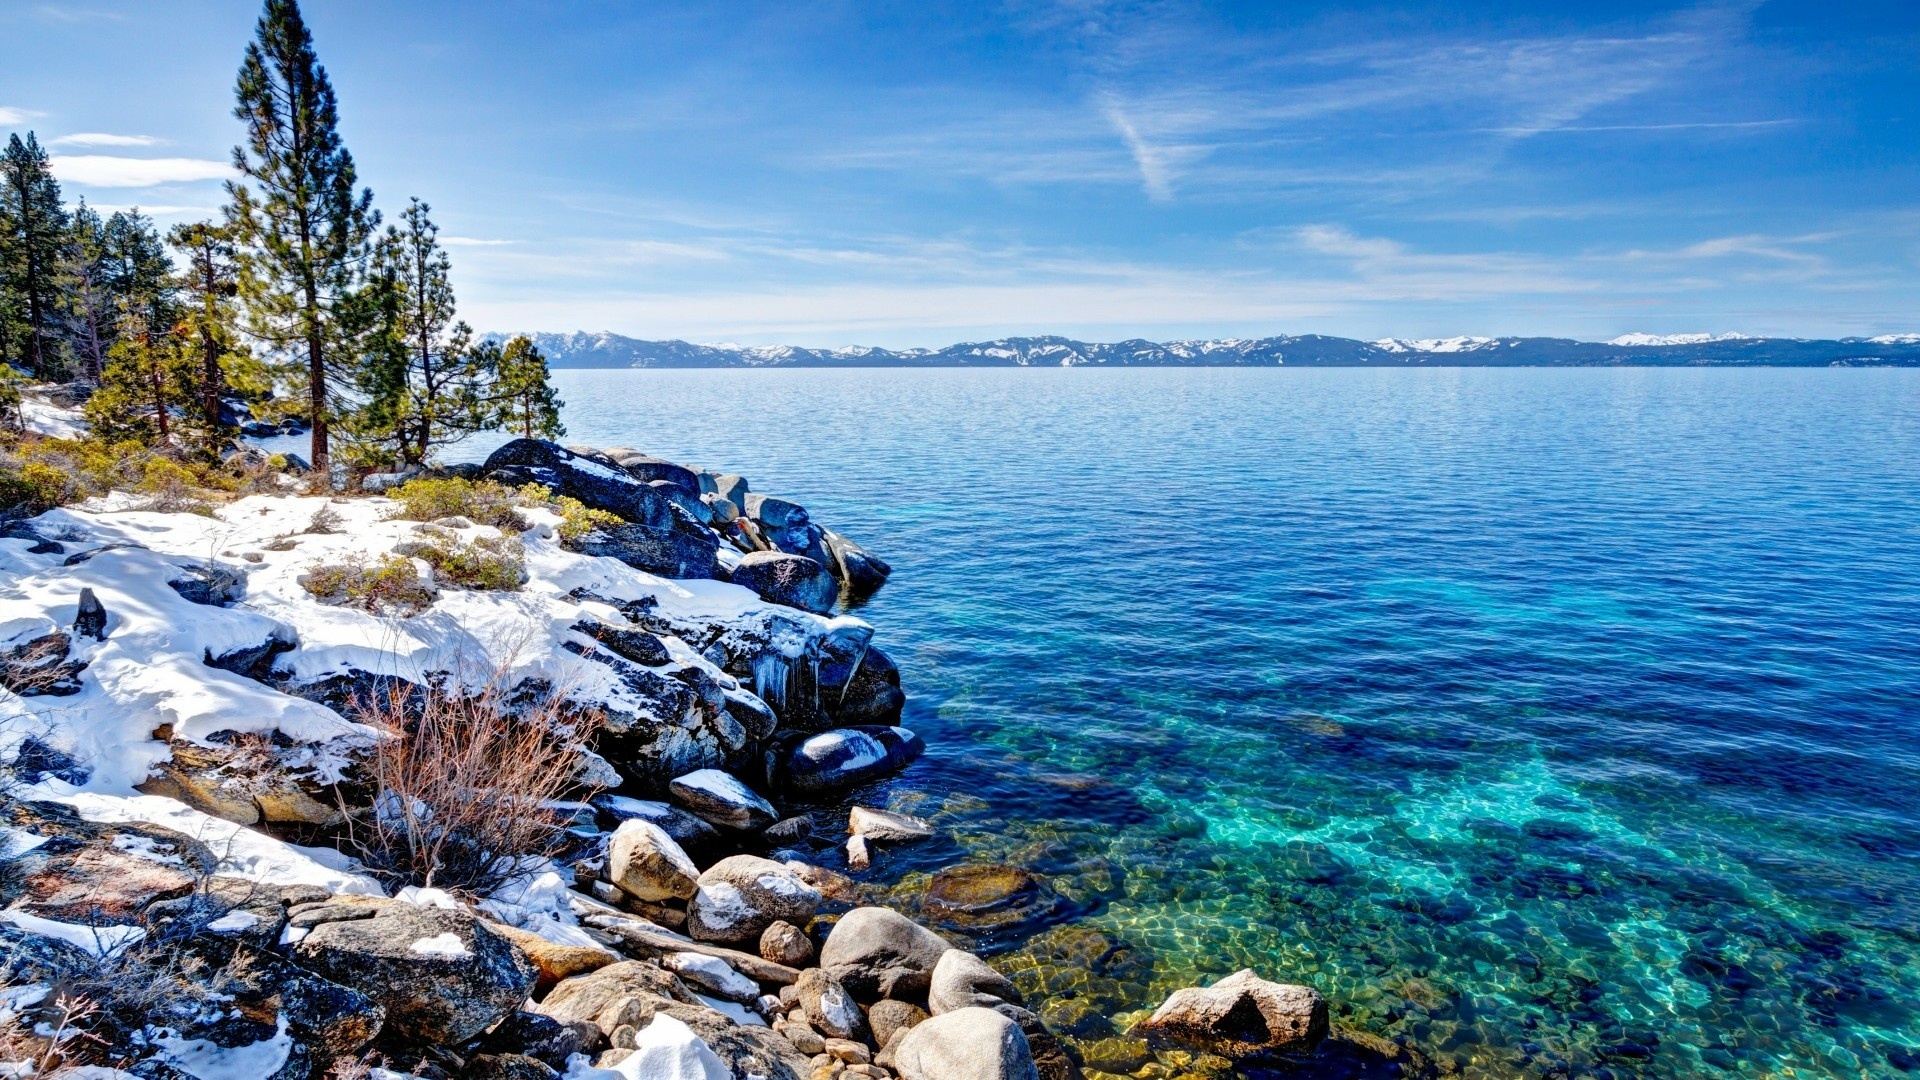 Lake Tahoe wallpaper for desktop